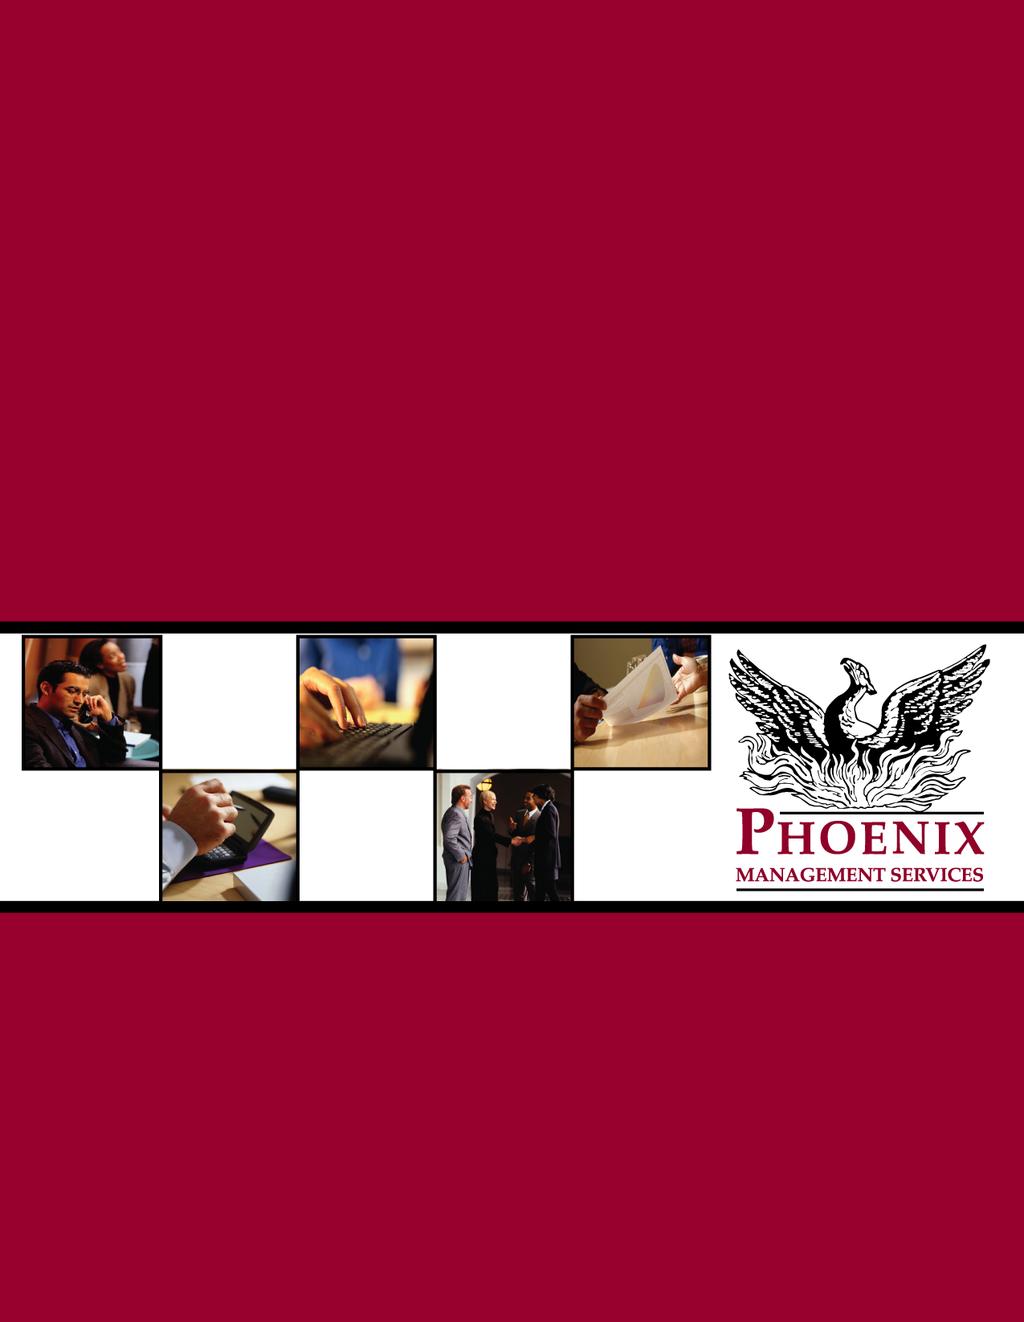 Phoenix Management Services